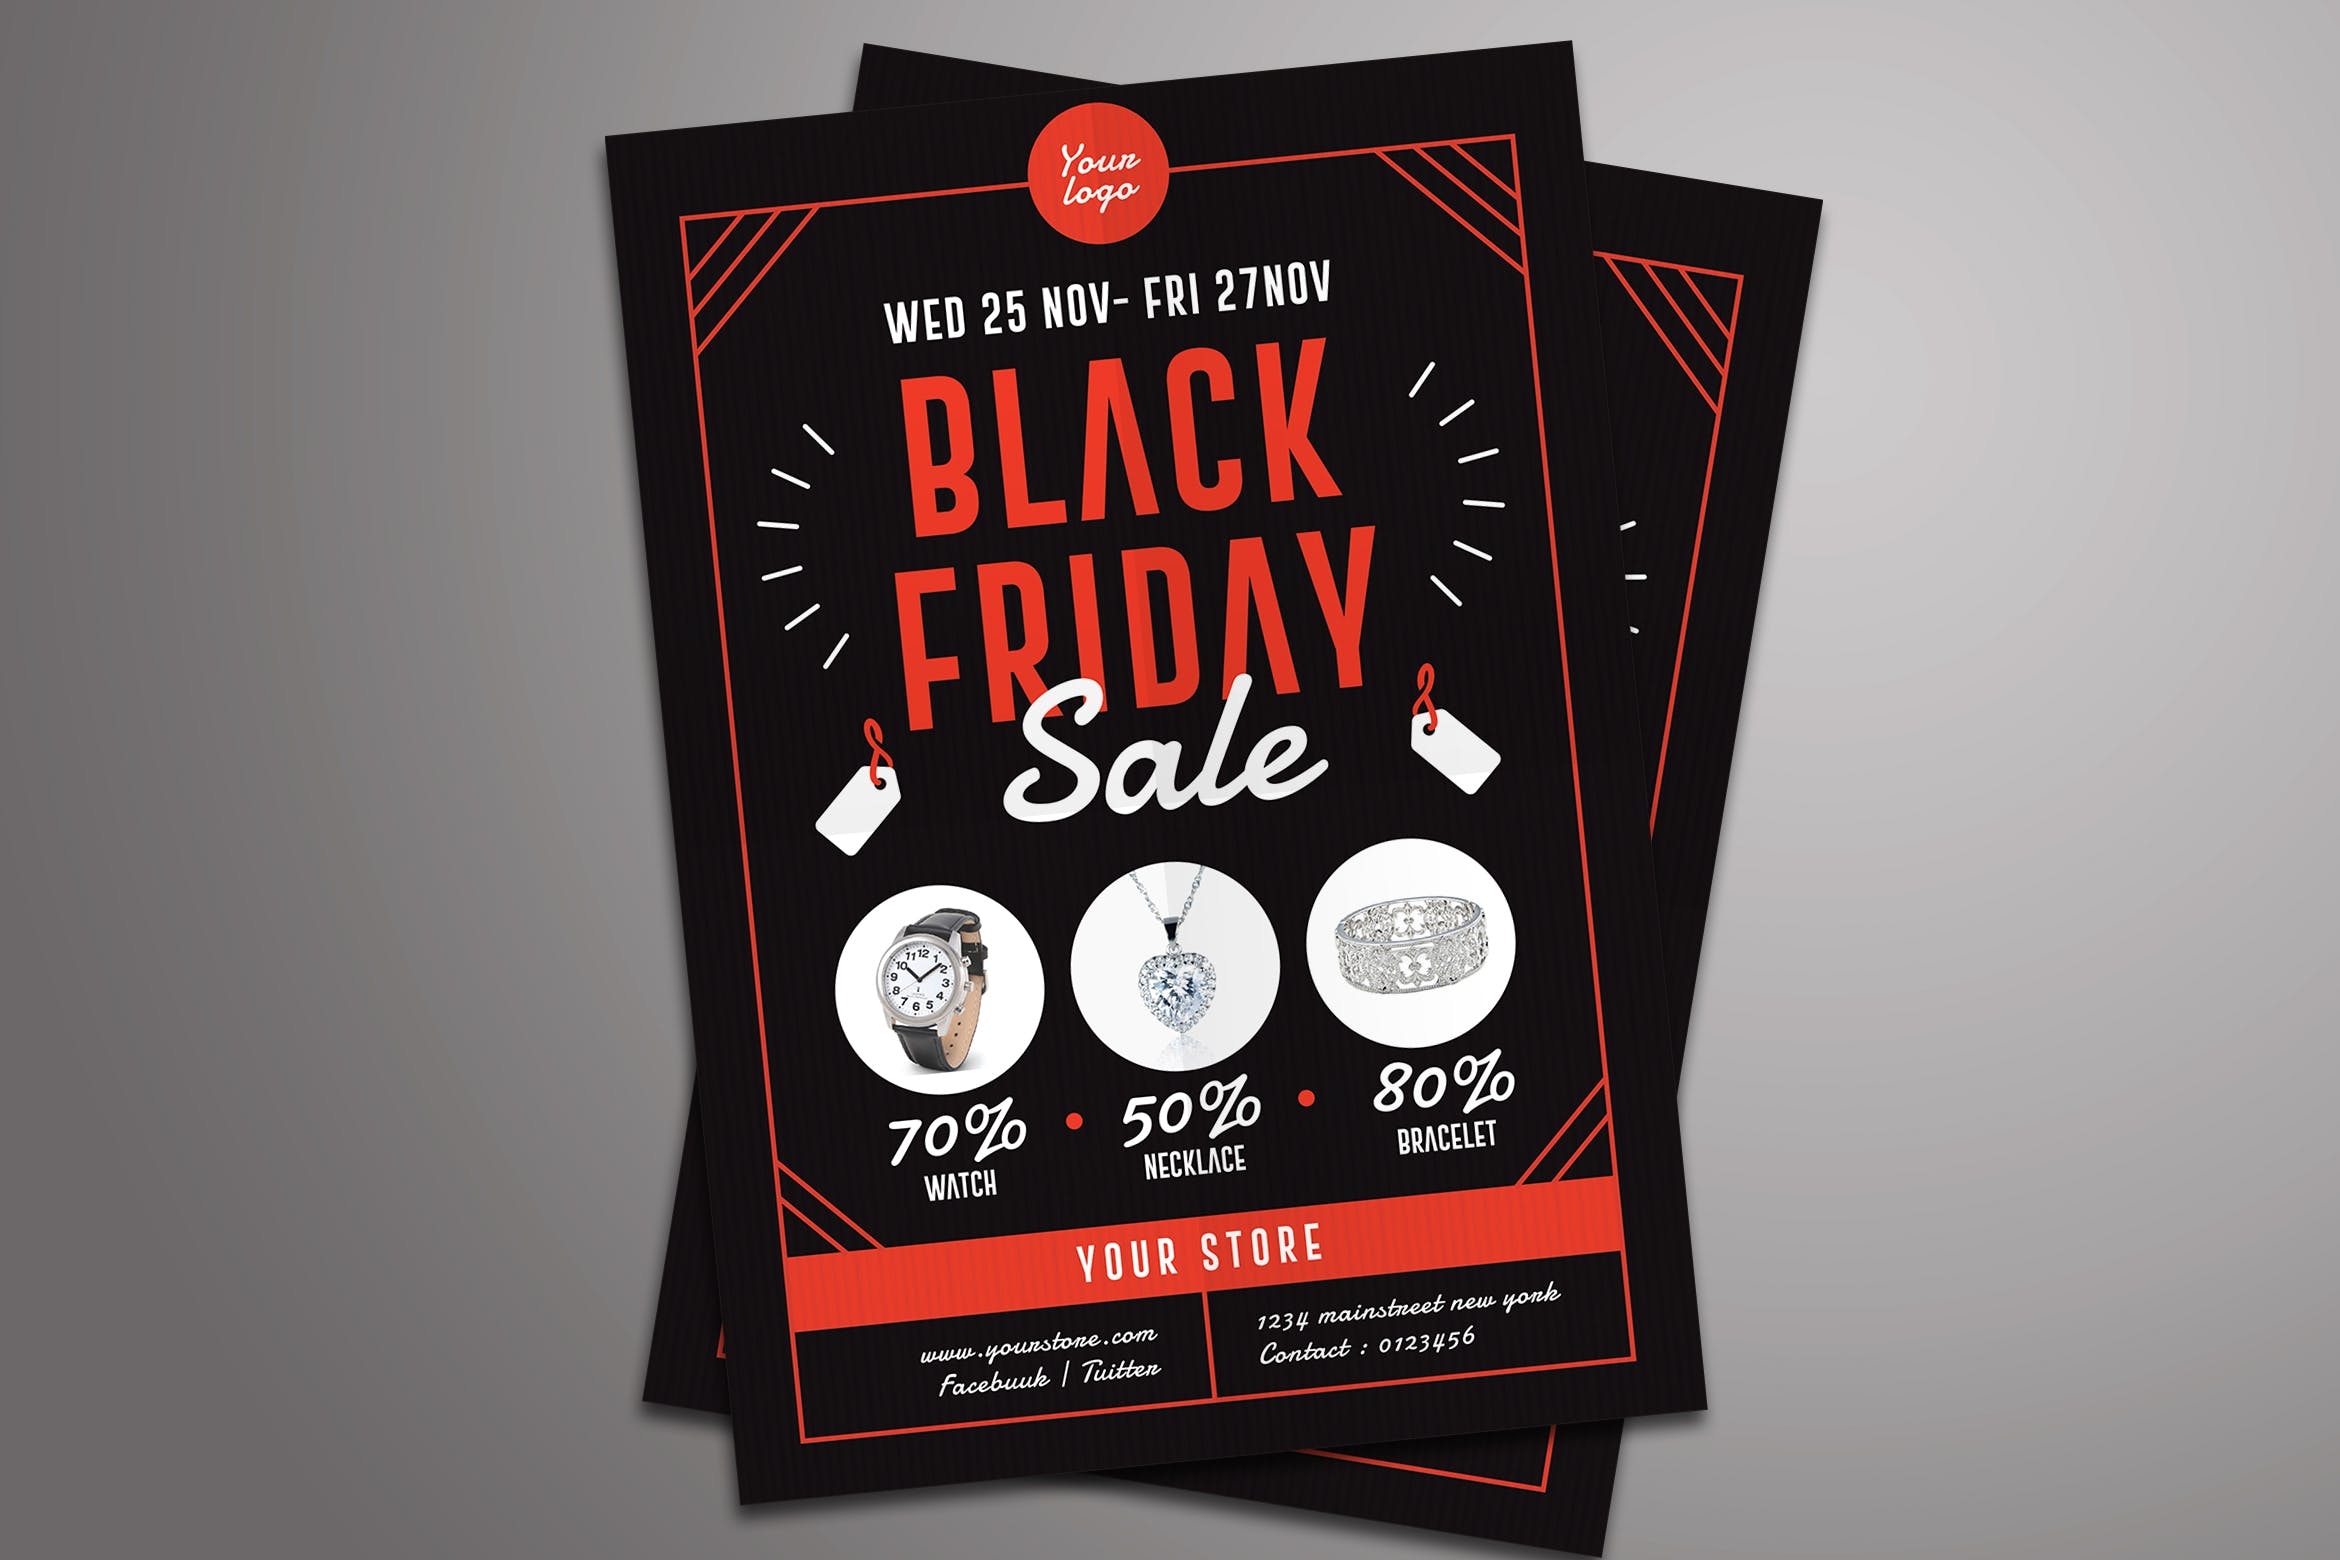 2019黑色星期五购物狂欢节促销海报模板 Black Friday Sale Flyer插图